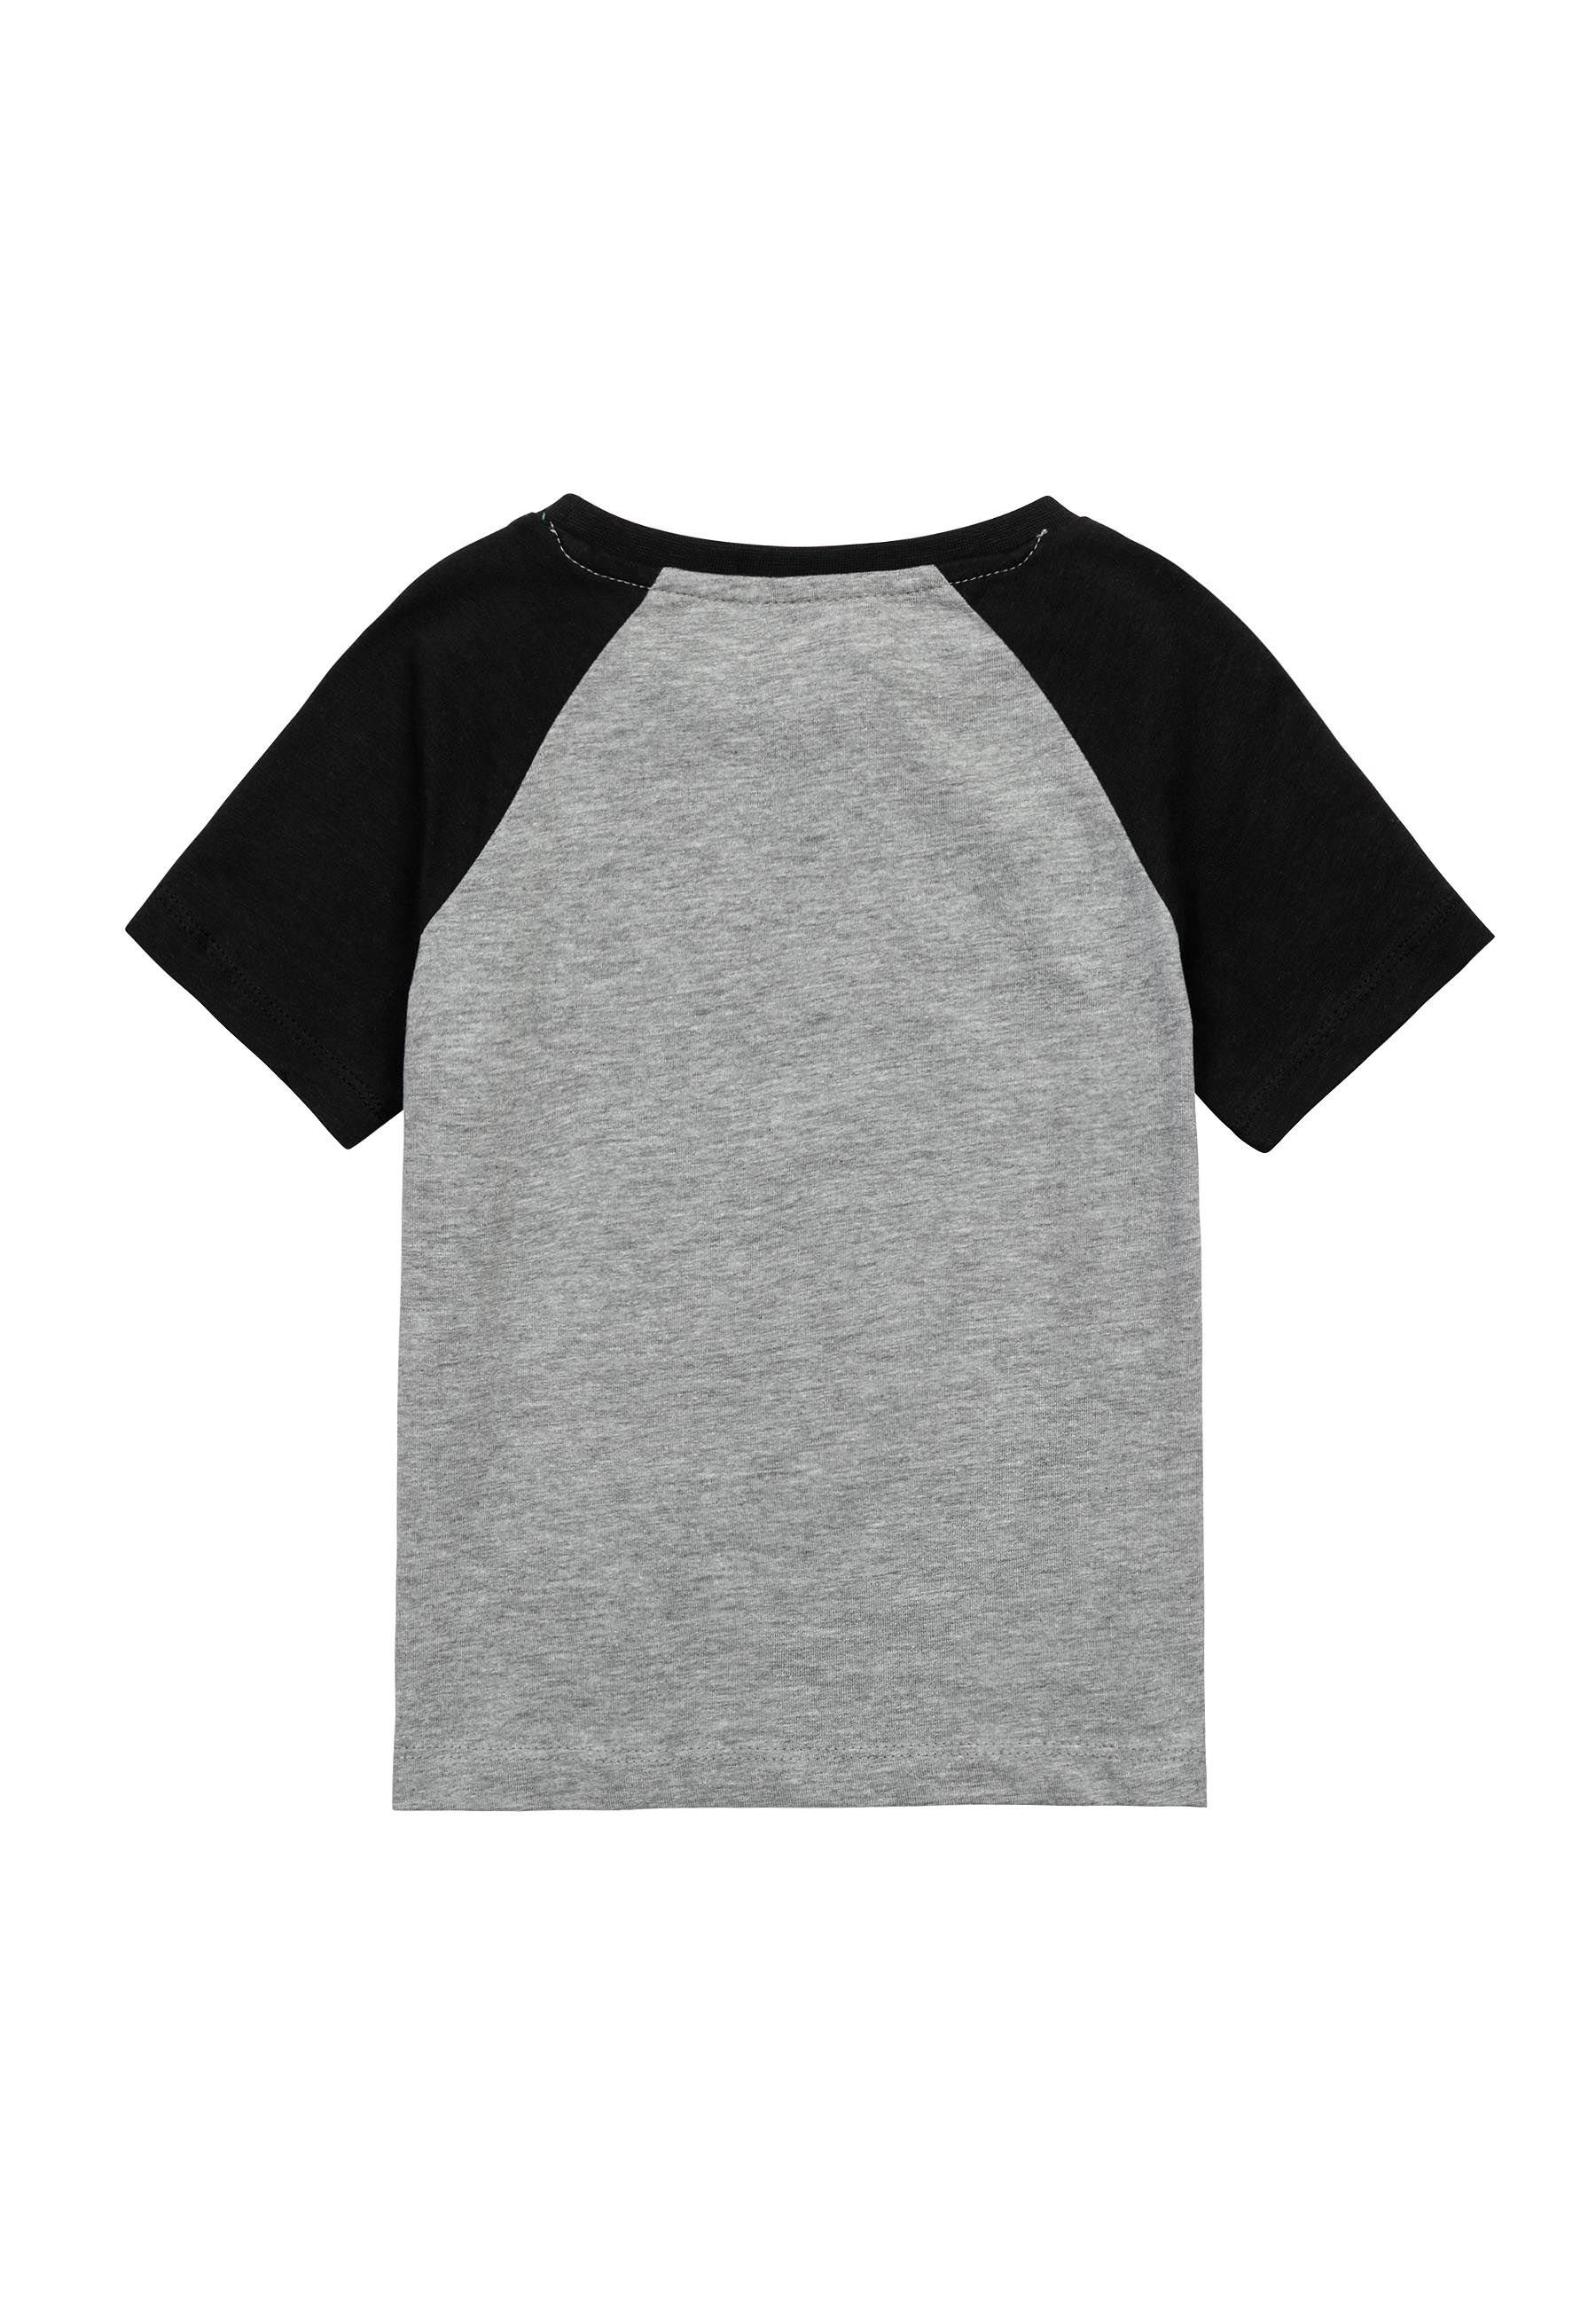 MINOTI T-Shirt Sommer T-Shirt Grau bunten Ärmeln (3y-14y) mit